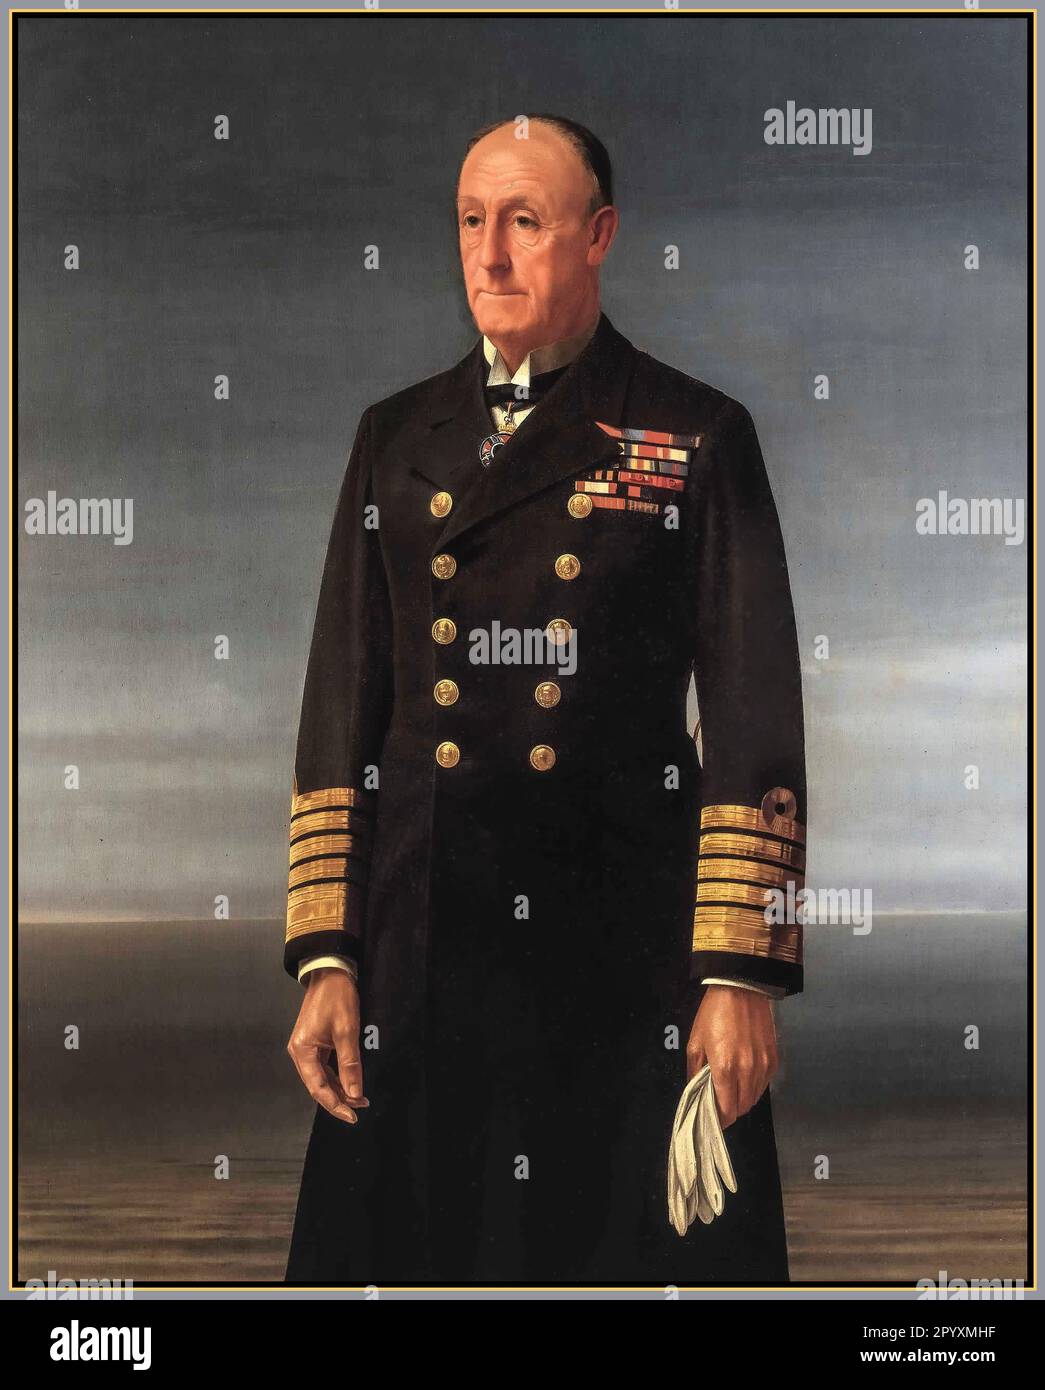 Amiral de la flotte John Rushworth Jellicoe, 1st Earl Jellicoe, GCB, OM, GCVO, DL, SGM était un officier de la Marine royale. Il a combattu pendant la guerre anglo-égyptienne et la rébellion des boxers et a commandé la Grande flotte à la bataille de Jutland en mai 1916 pendant la première Guerre mondiale. Amiral de la flotte John Jellicoe, peinture 1859-1935, 1st Earl Jellicoe Banque D'Images